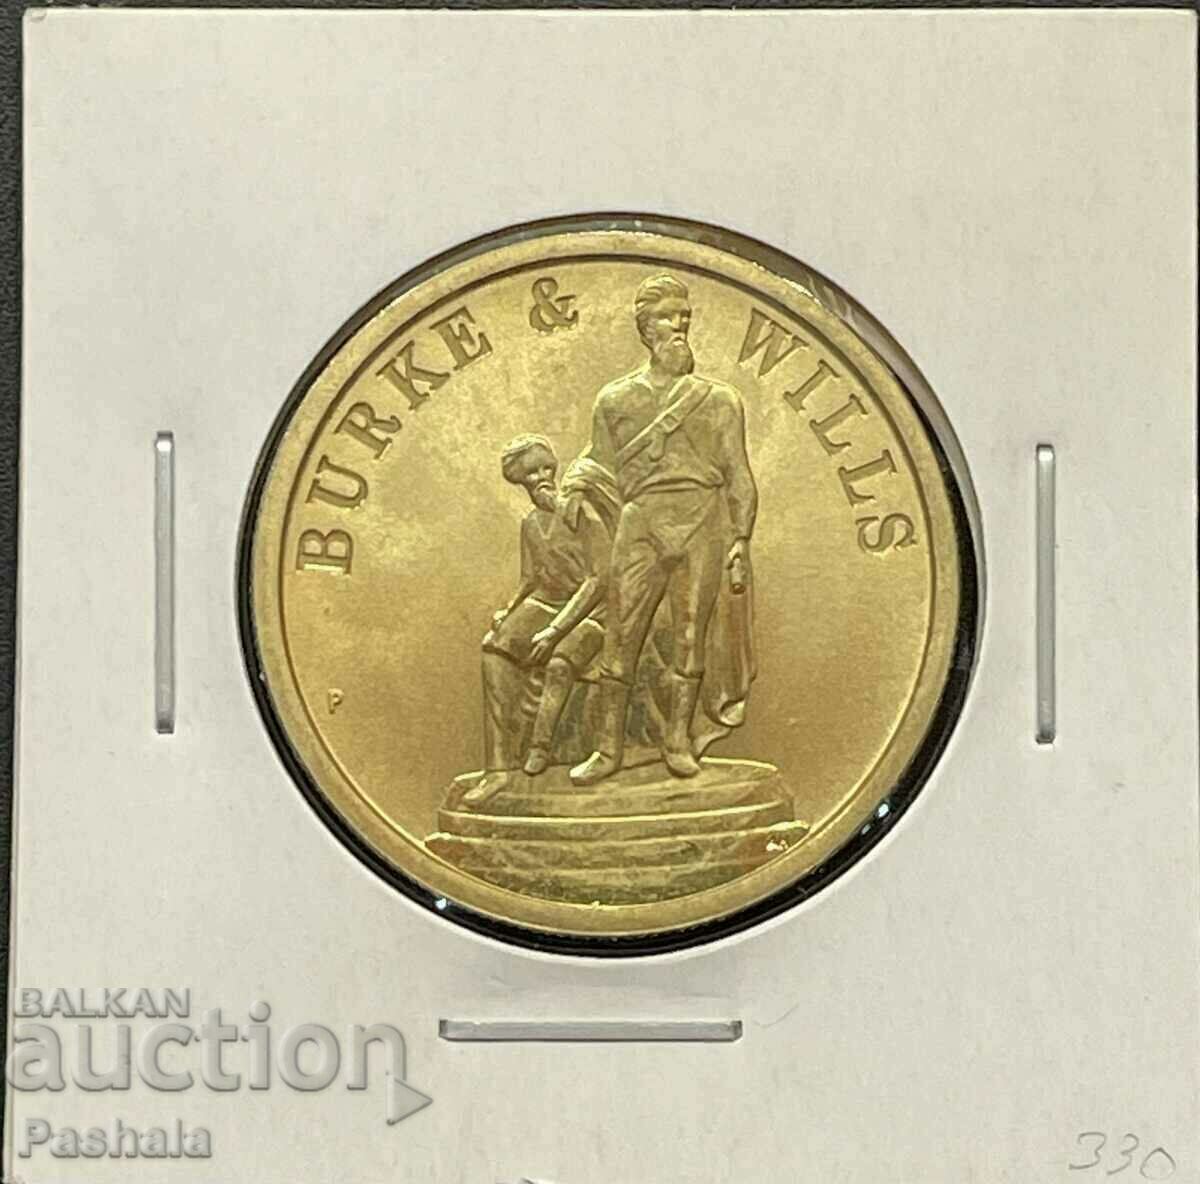 Австралия 1 долар 2010 г.